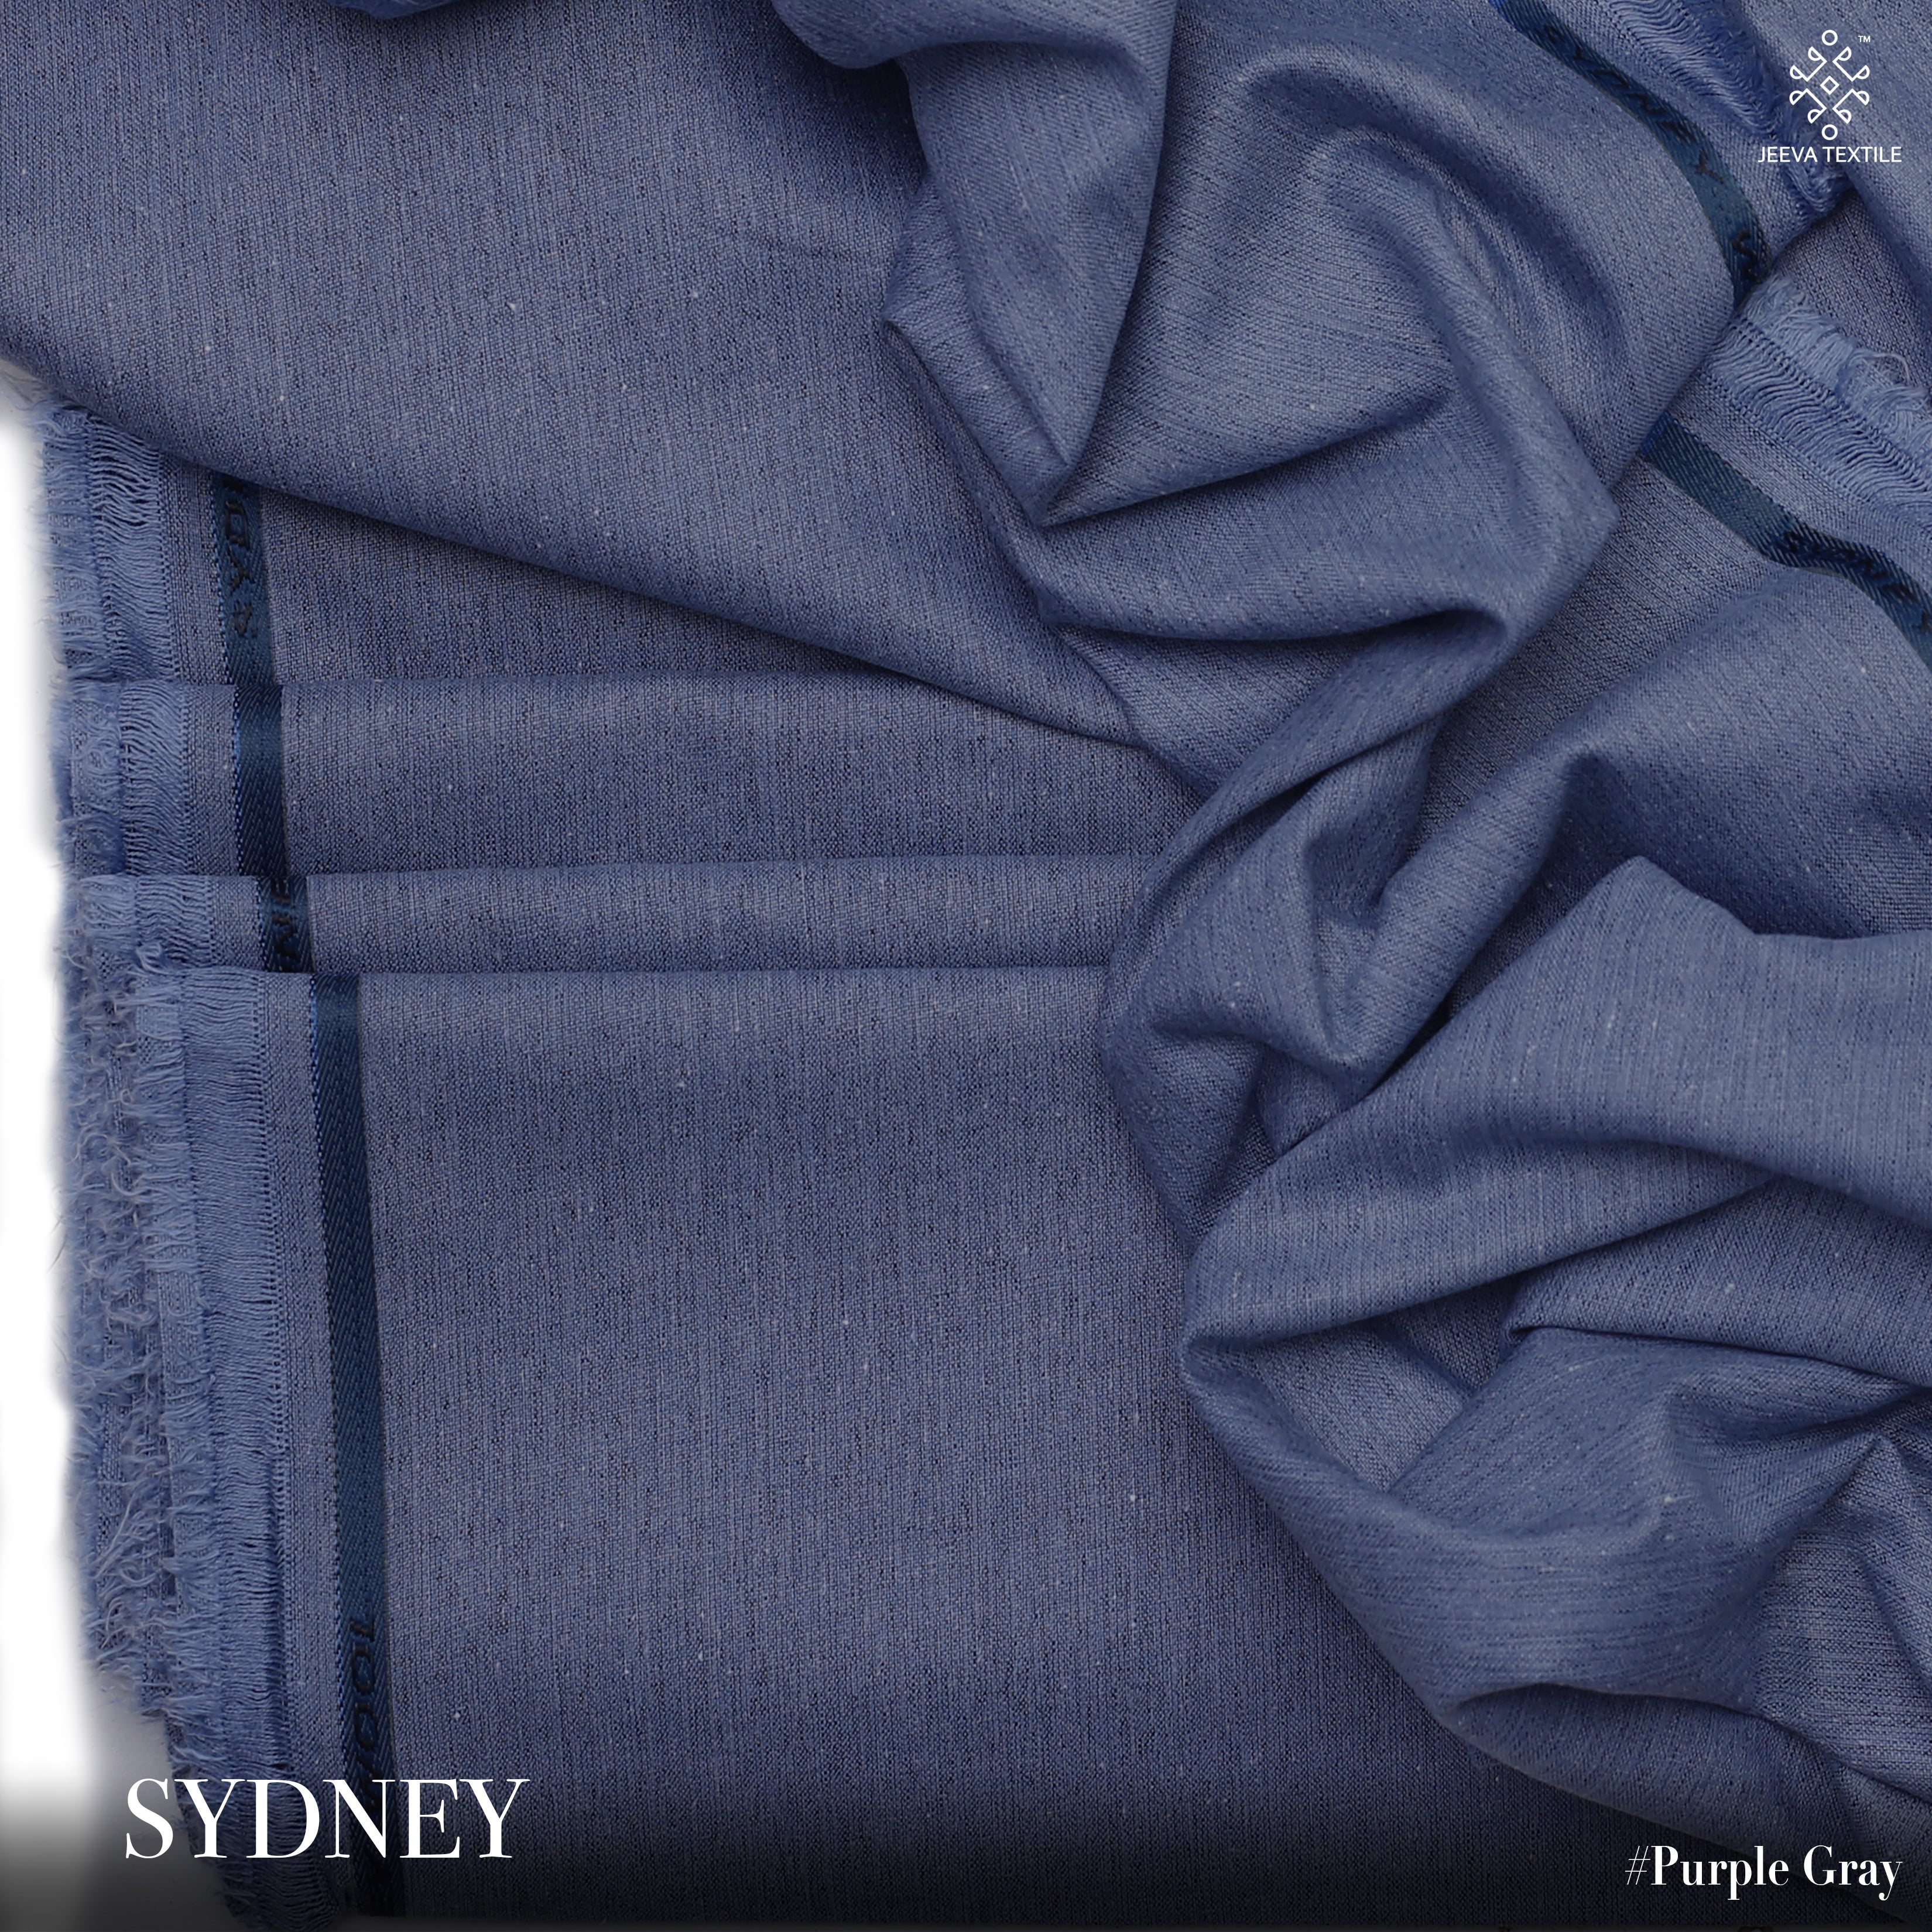 Sydney - Karandi Texture